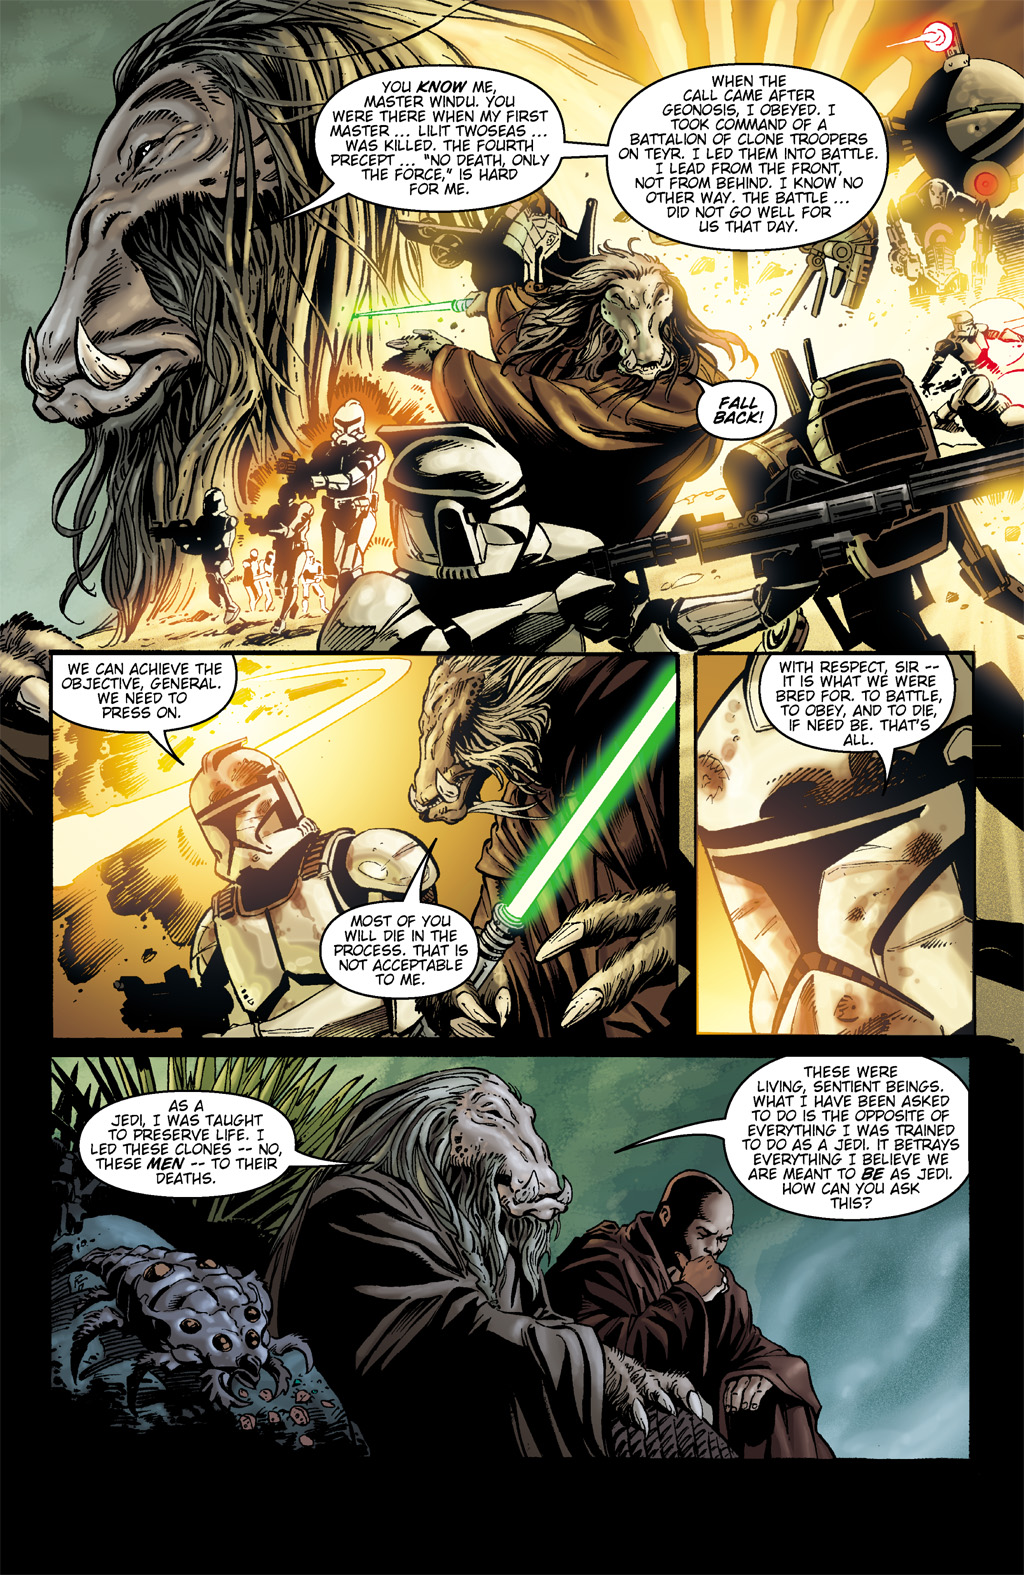 Read online Star Wars: Clone Wars comic -  Issue # TPB 1 - 99